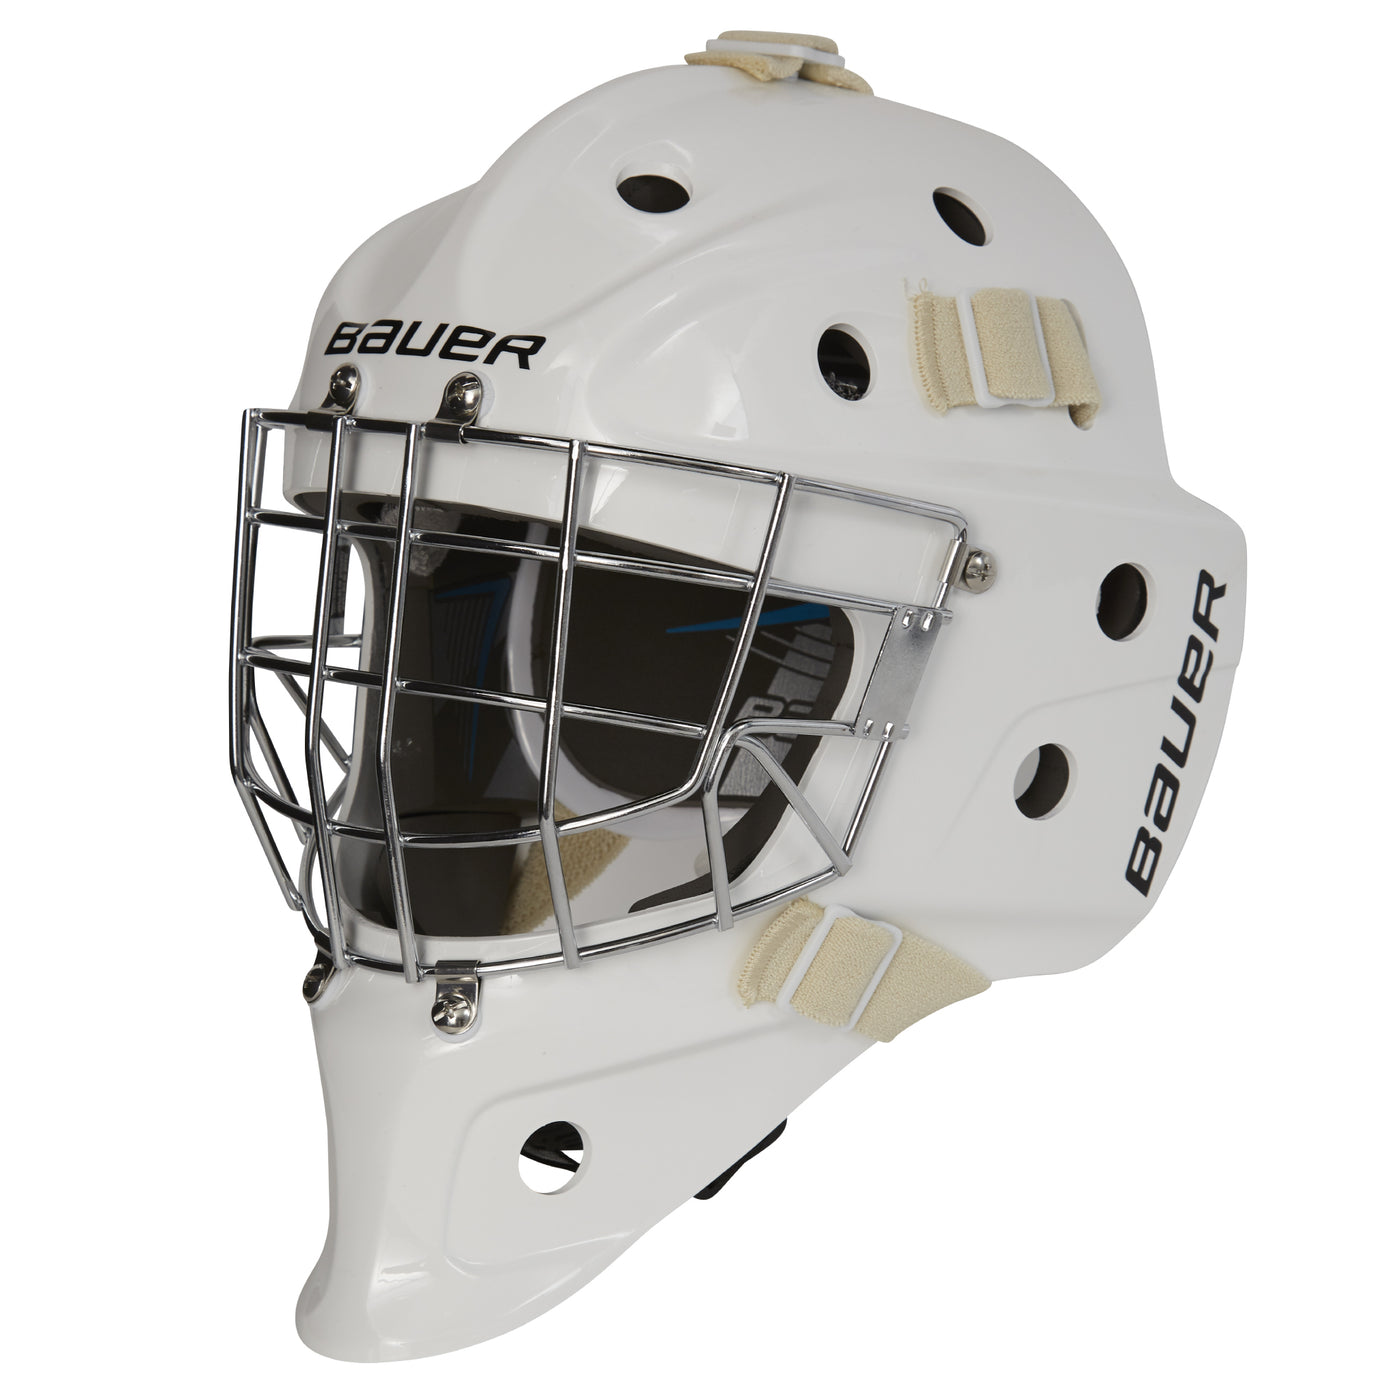 BAUER 930 Goalie Mask - SR (Certified)